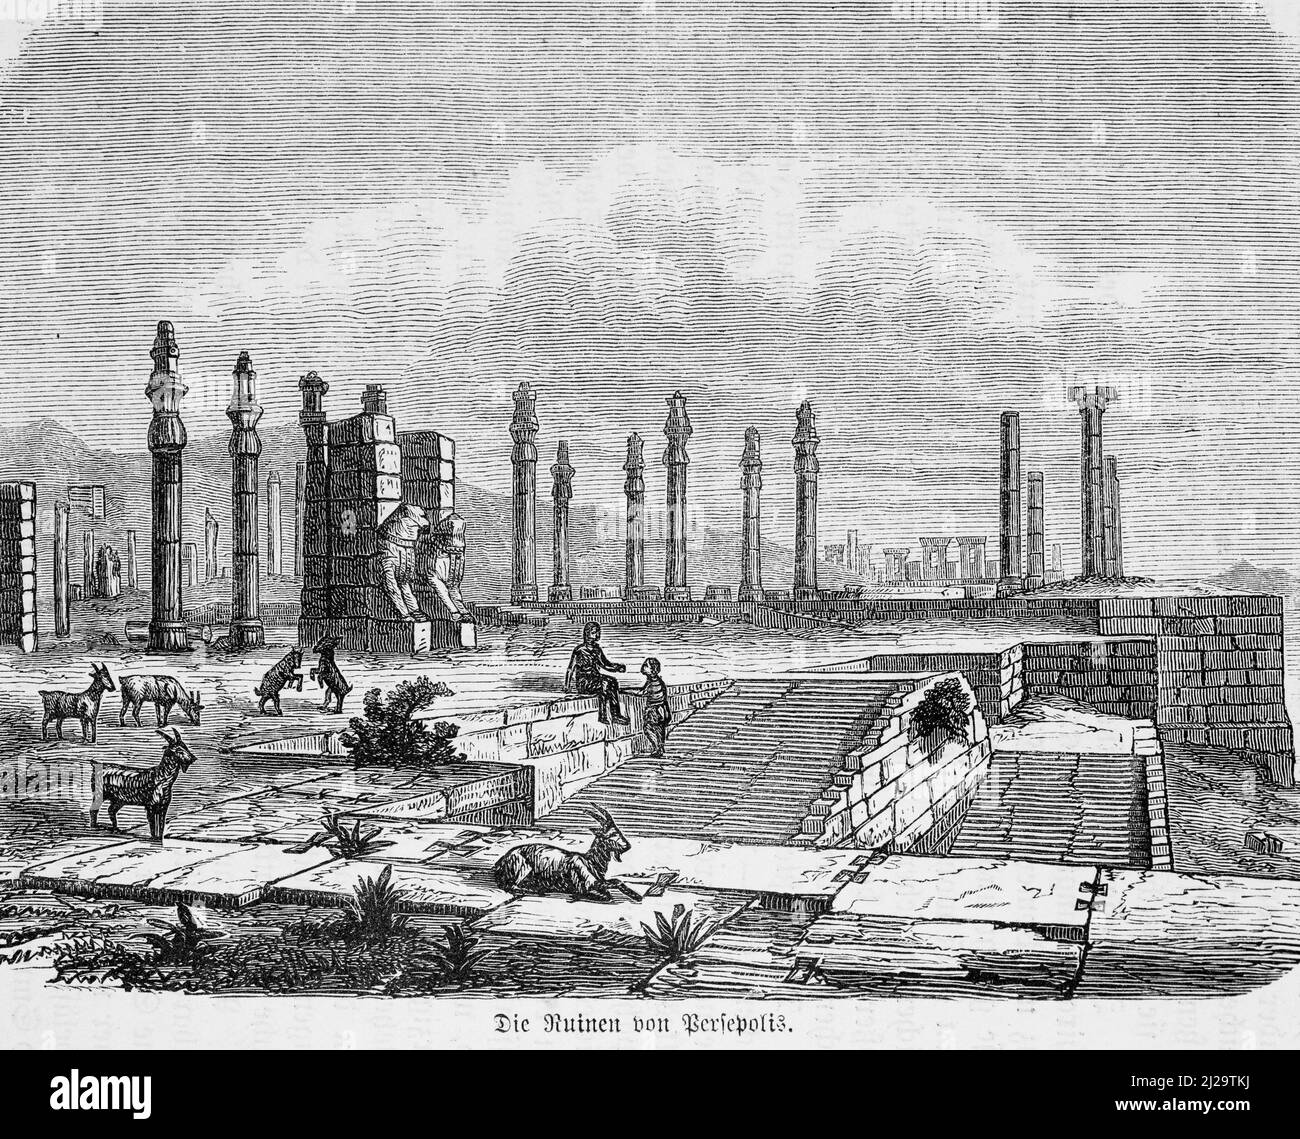 Persepolis, ruines, colonnes, portail, chèvres, Personnes, illustration historique 1885, 19th siècle, Perse, Iran, Asie centrale Banque D'Images